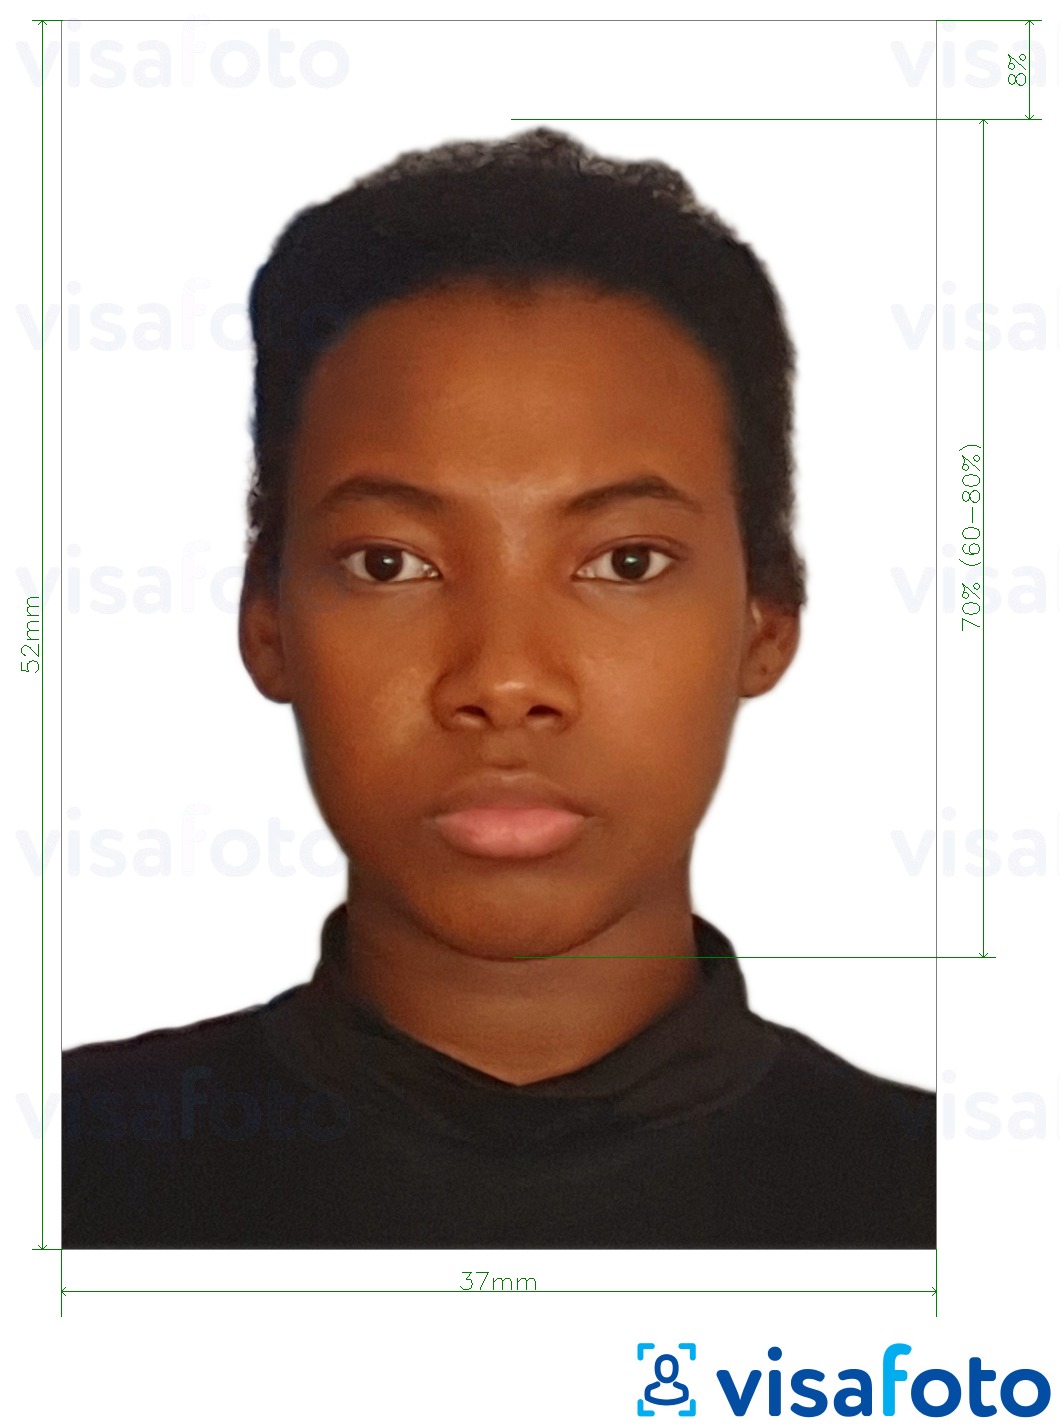 Shembulli i fotos per Pasaporta e Namibisë 37x52mm (3.7x5.2 cm) me specifikimet ekzakte